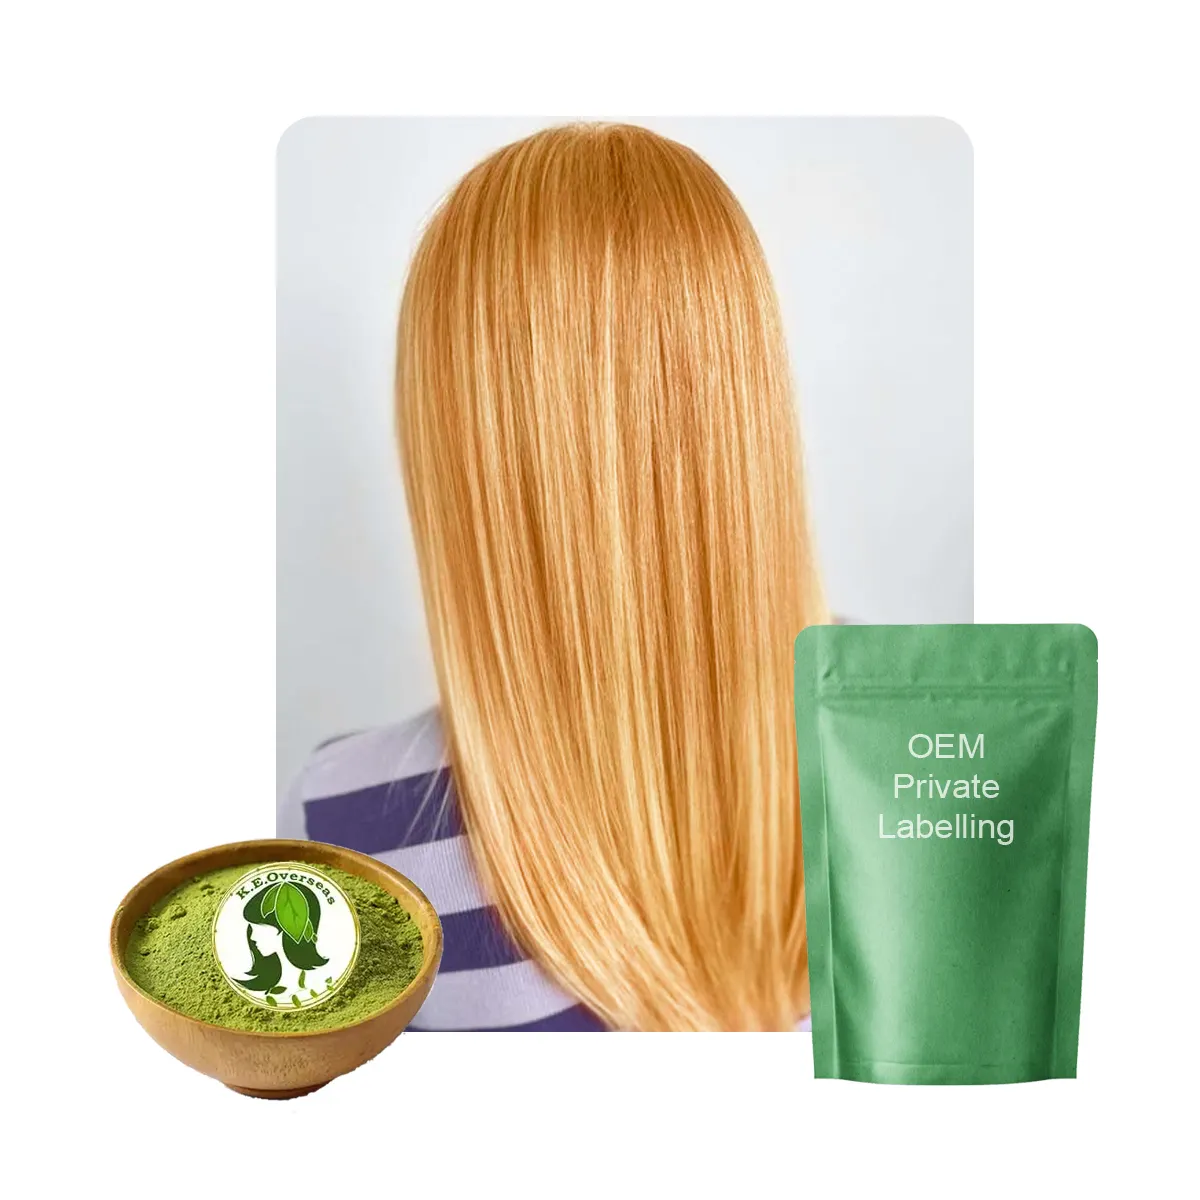 העליון ההודי מוכר אורגני אפרסק שיער בלונדיני צבע חינה אבקה מקצועי הטוב ביותר מוצרים צבע שיער